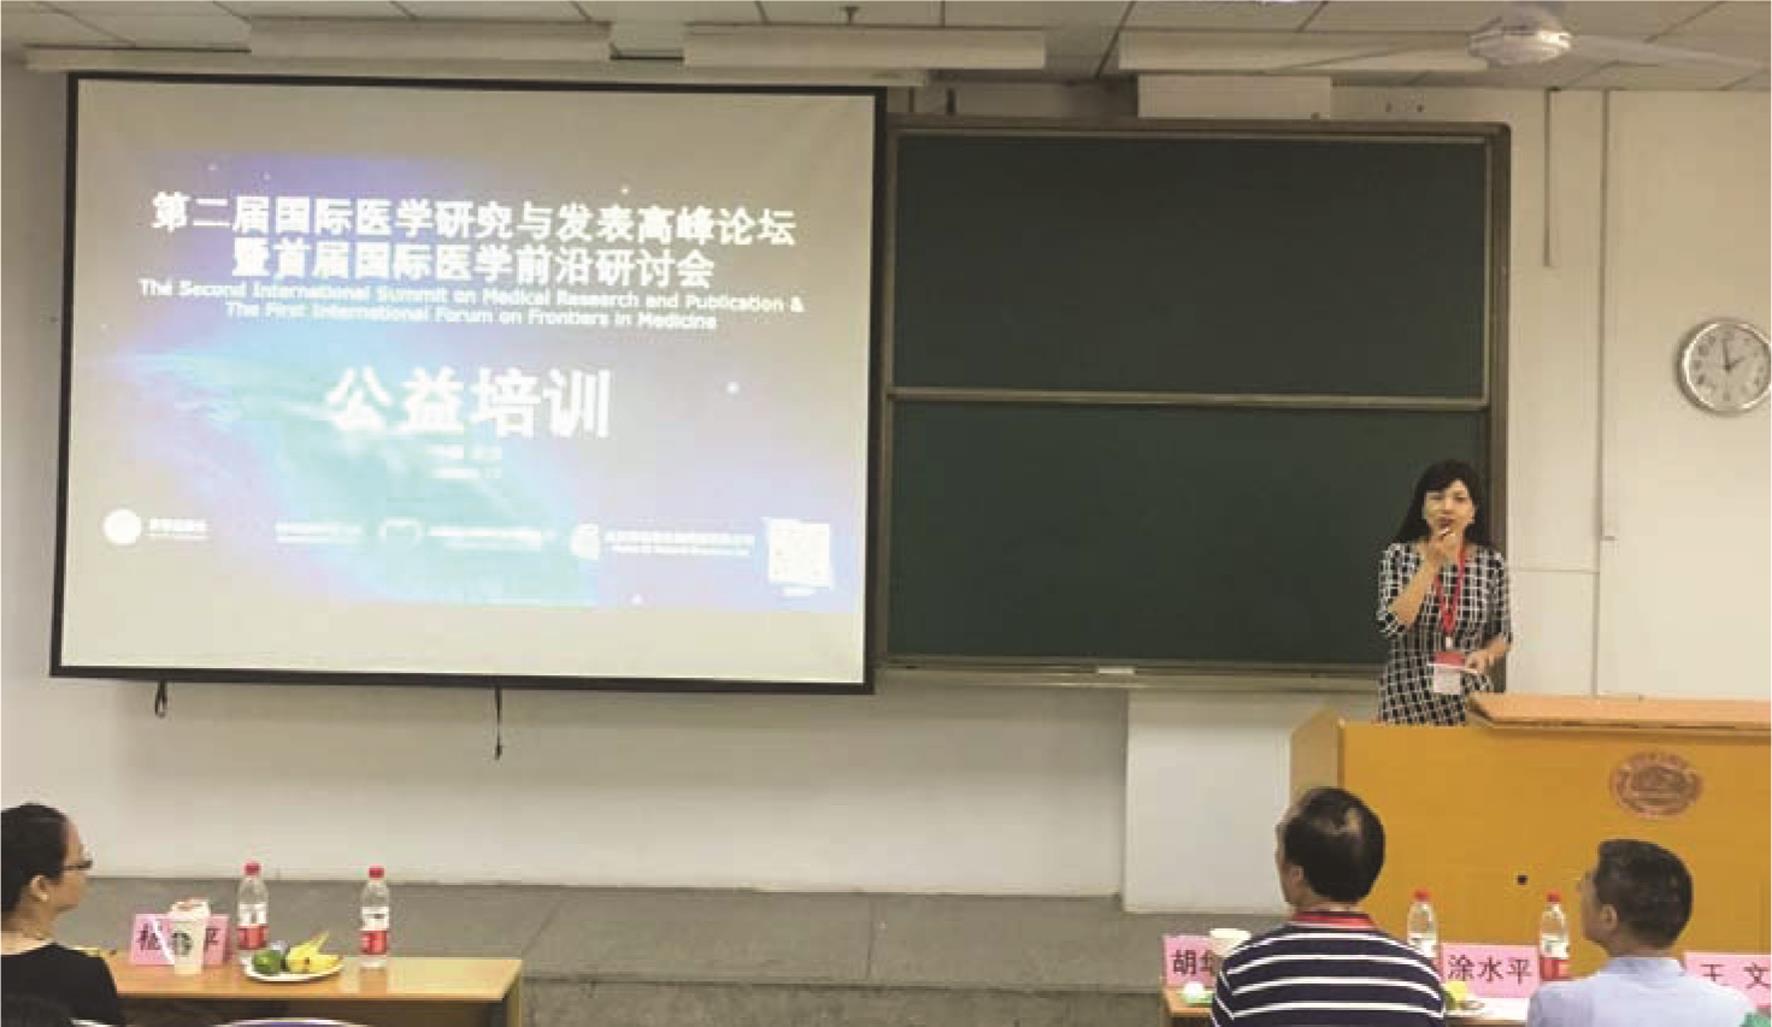 四川大学华西基础医学与法医学院药理教研室张媛媛副教授担任主持。